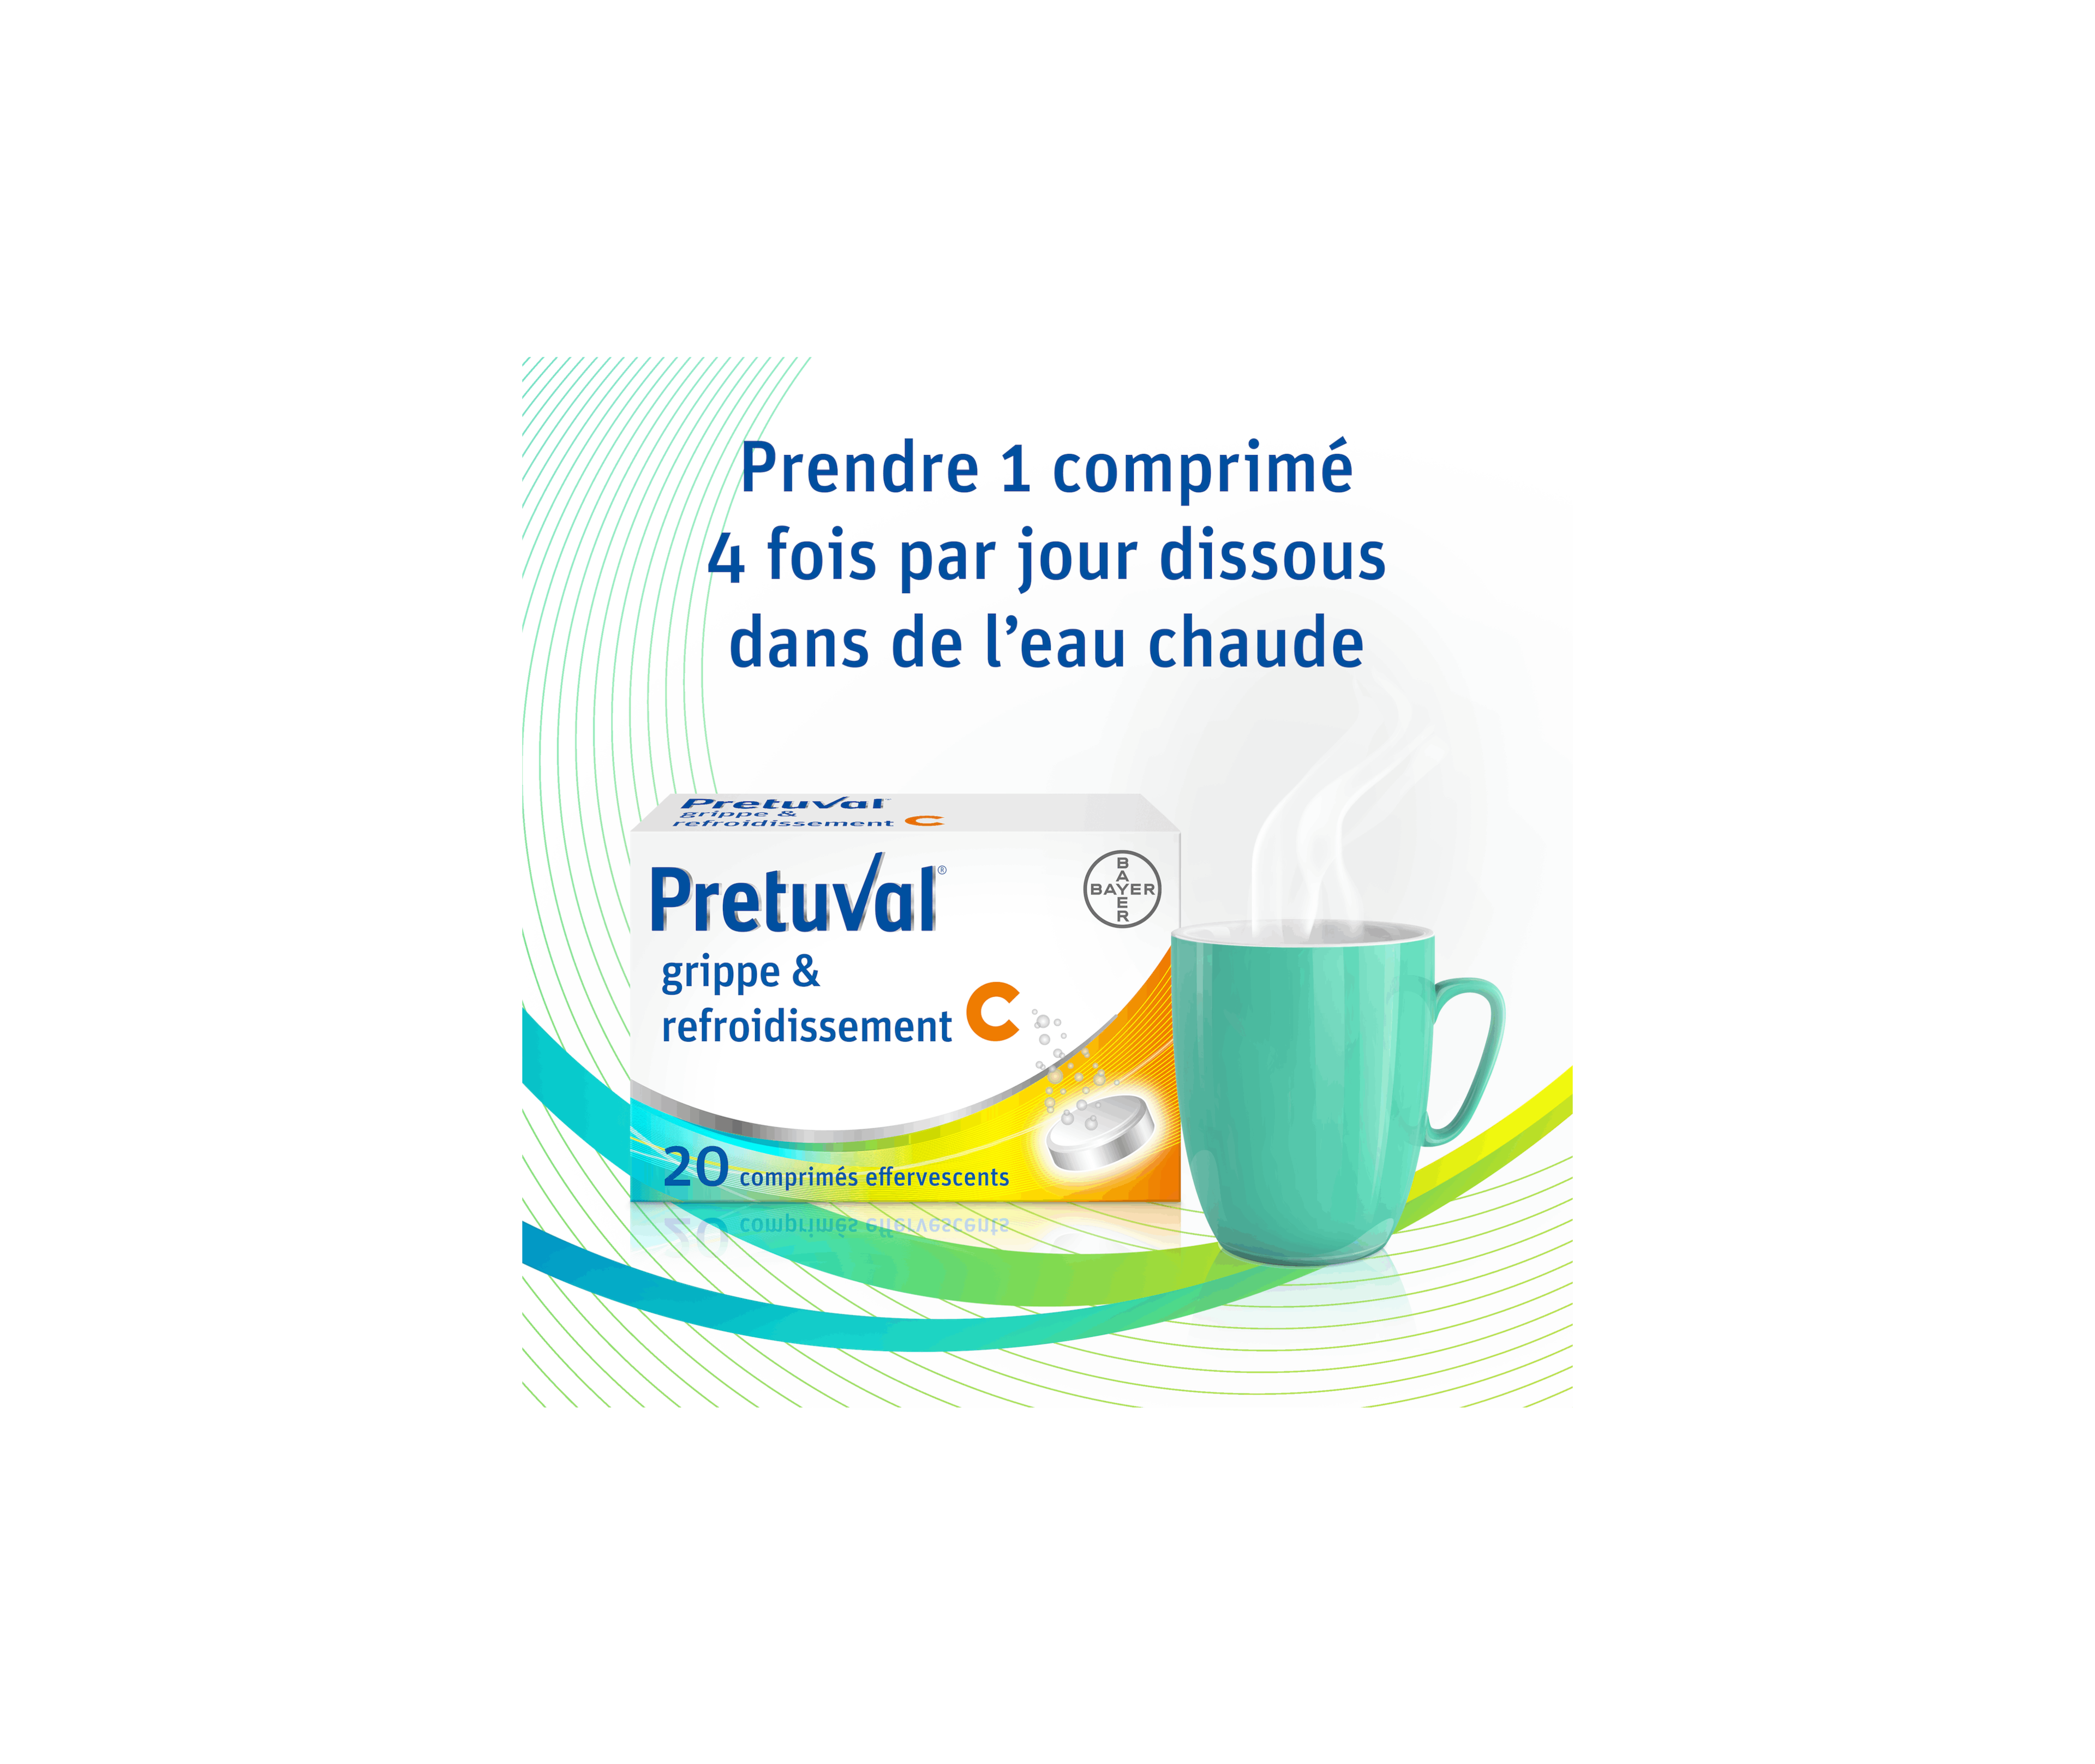 Pretuval® grippe & refroidissement C – 20 comprimés effervescents